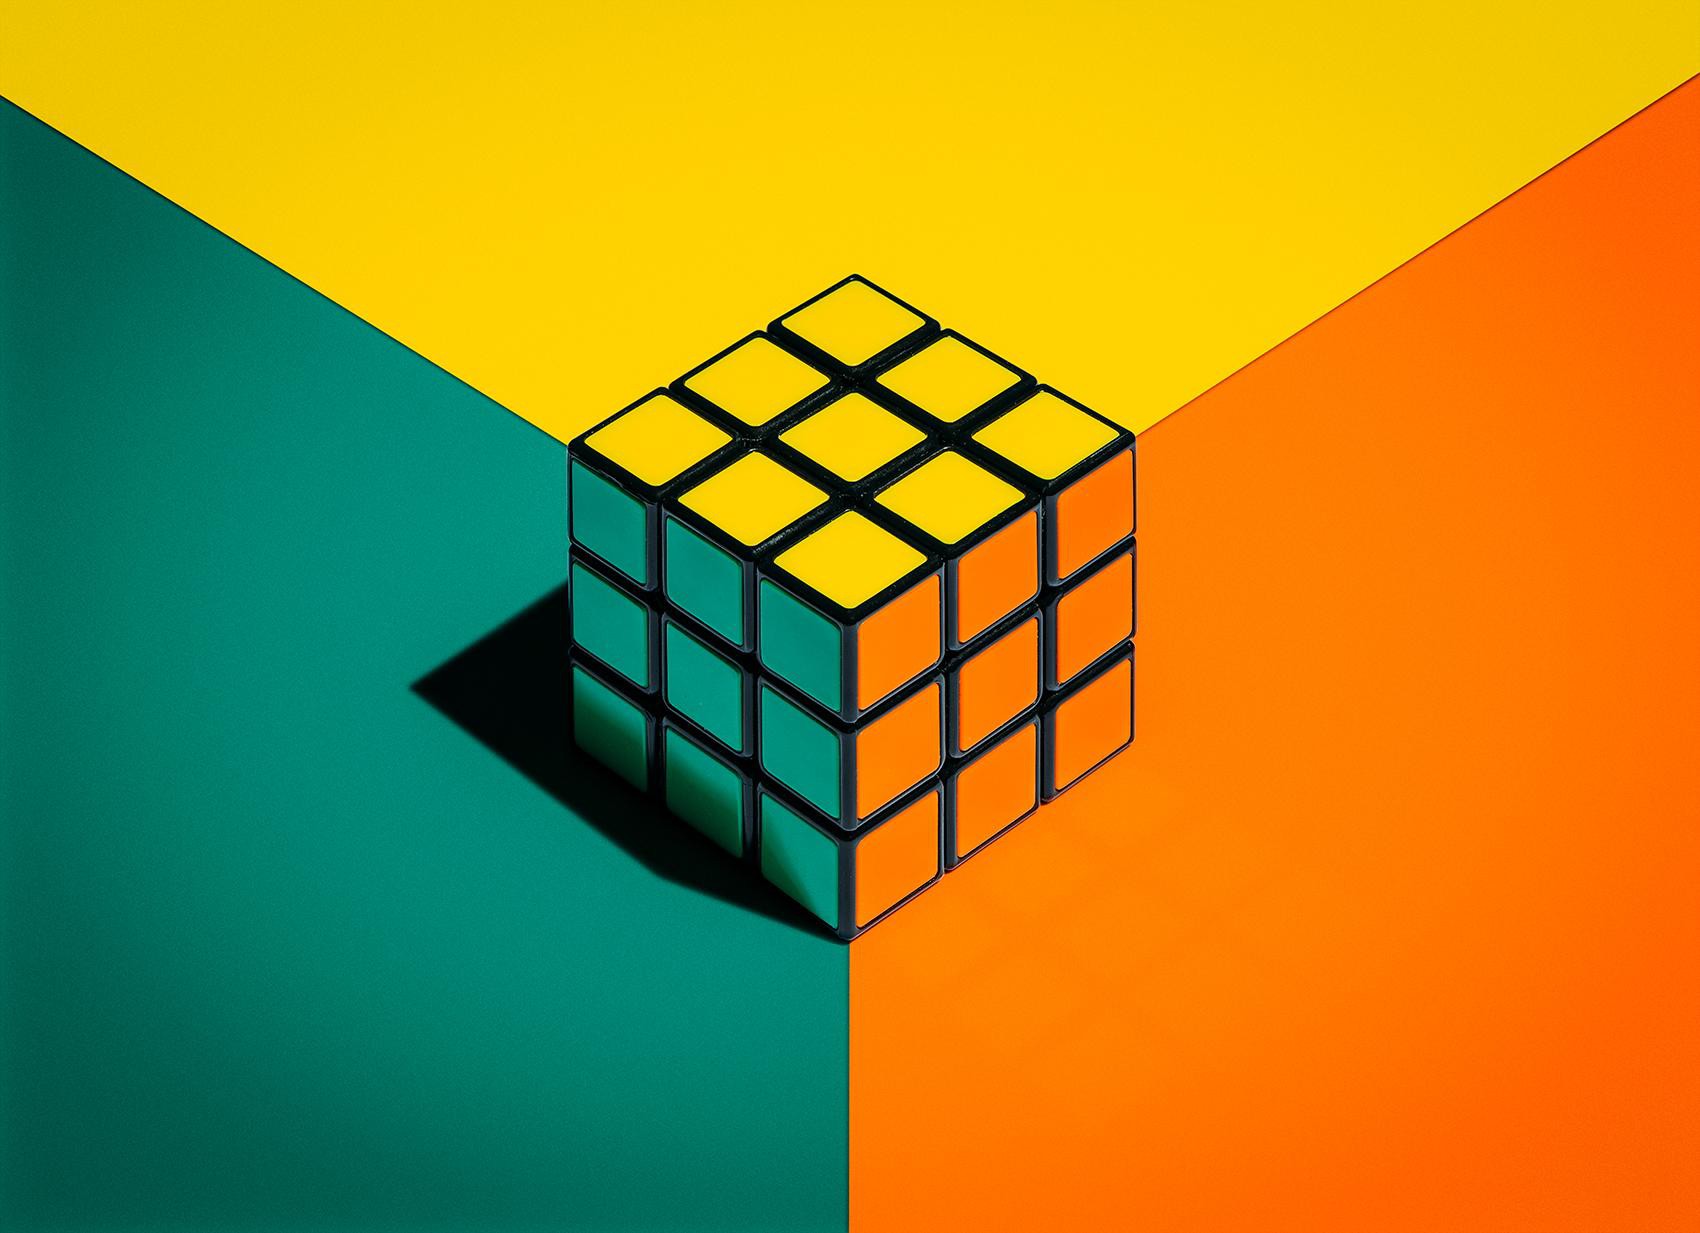 Nâng Khối Rubik 3x3 Trên Lòng Bàn Tay Của Người · Ảnh có sẵn miễn phí